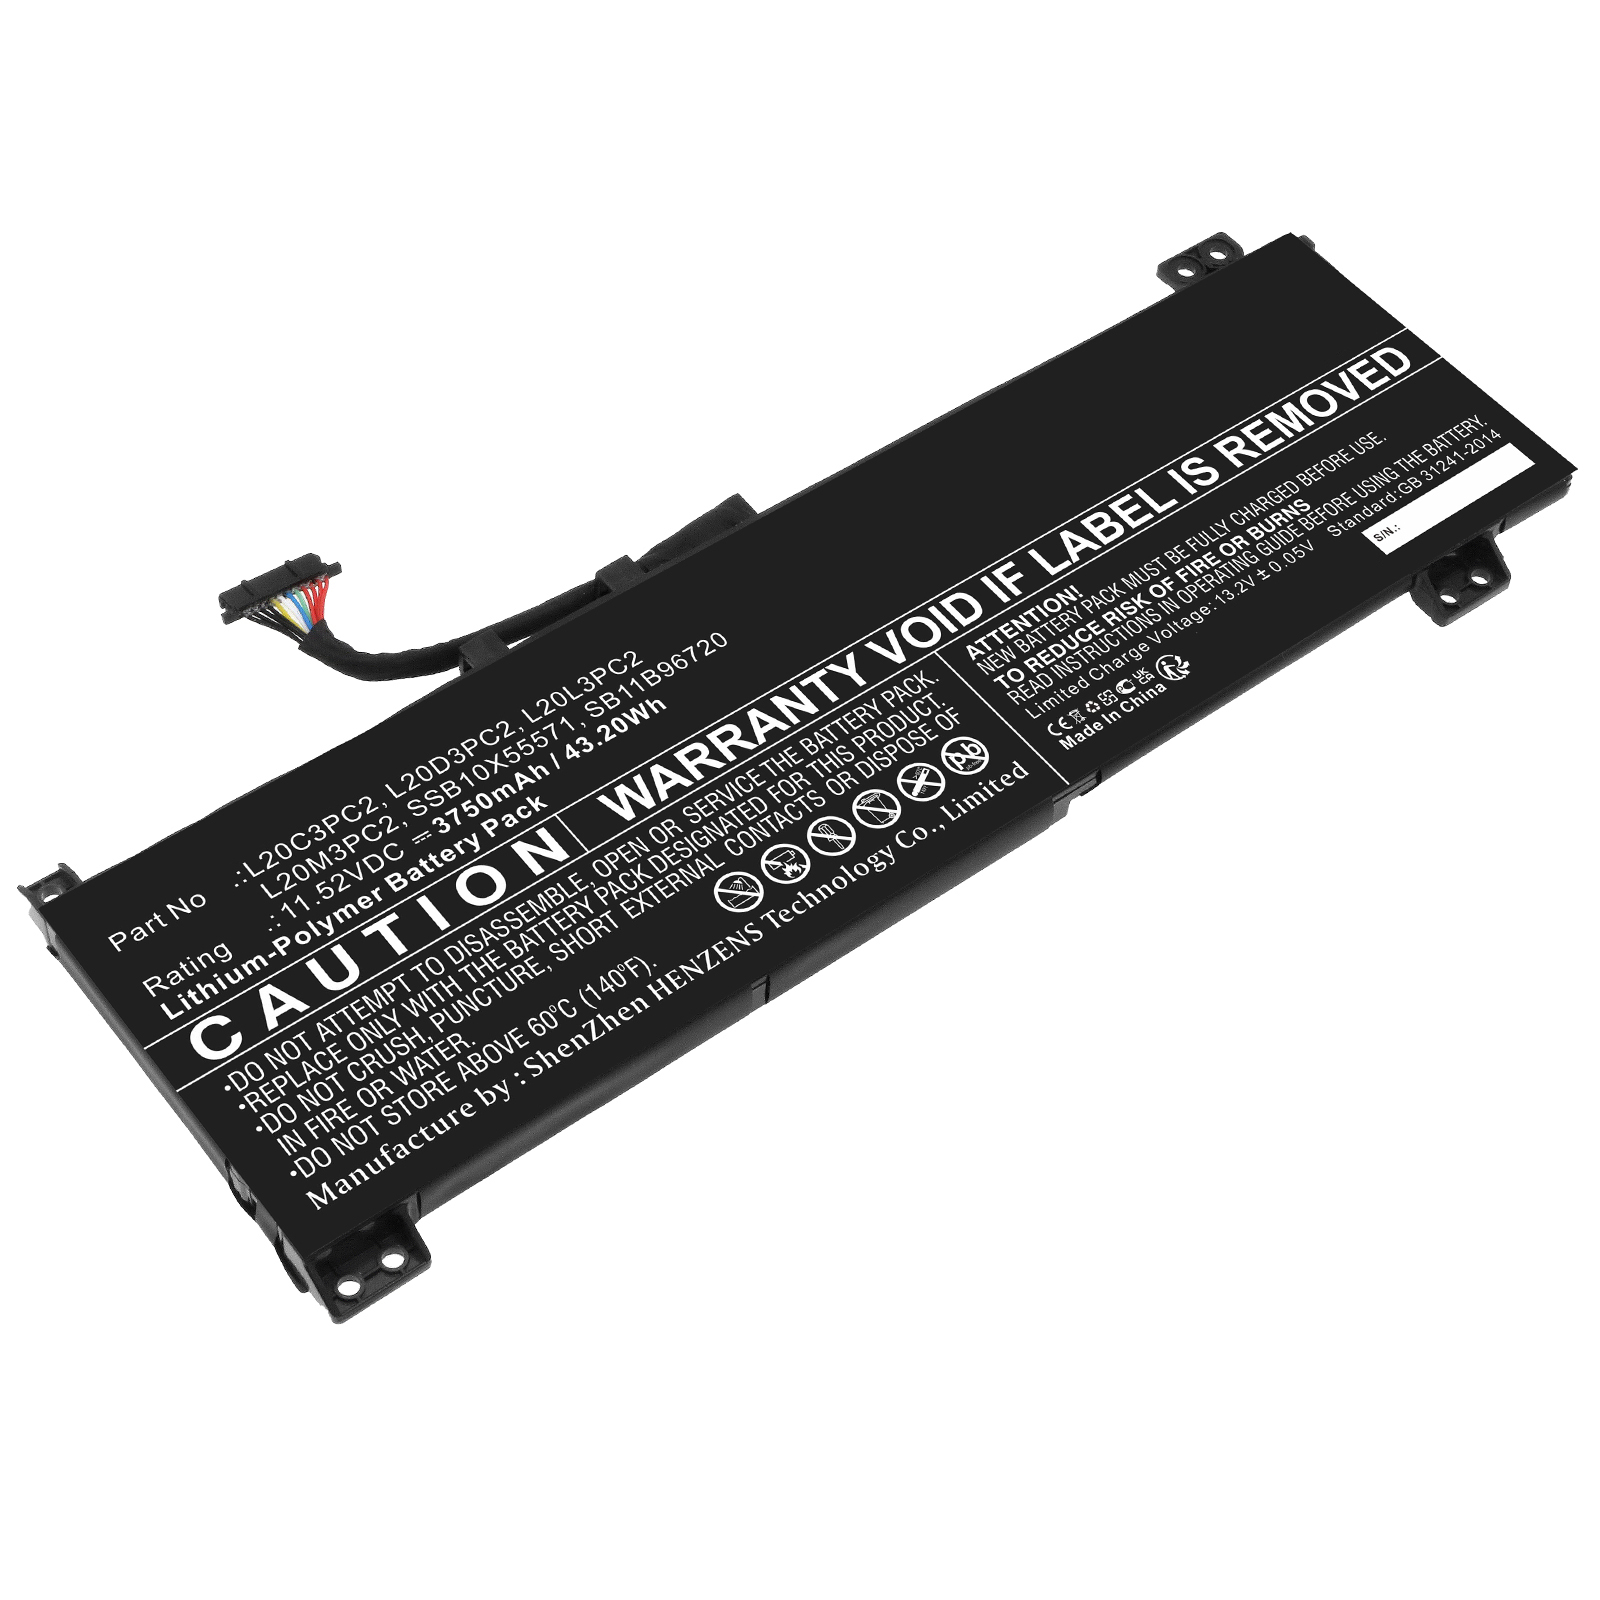 Synergy Digital Laptop Battery, Compatible with Lenovo L20C3PC2 Laptop Battery (Li-Pol, 11.52V, 3750mAh)